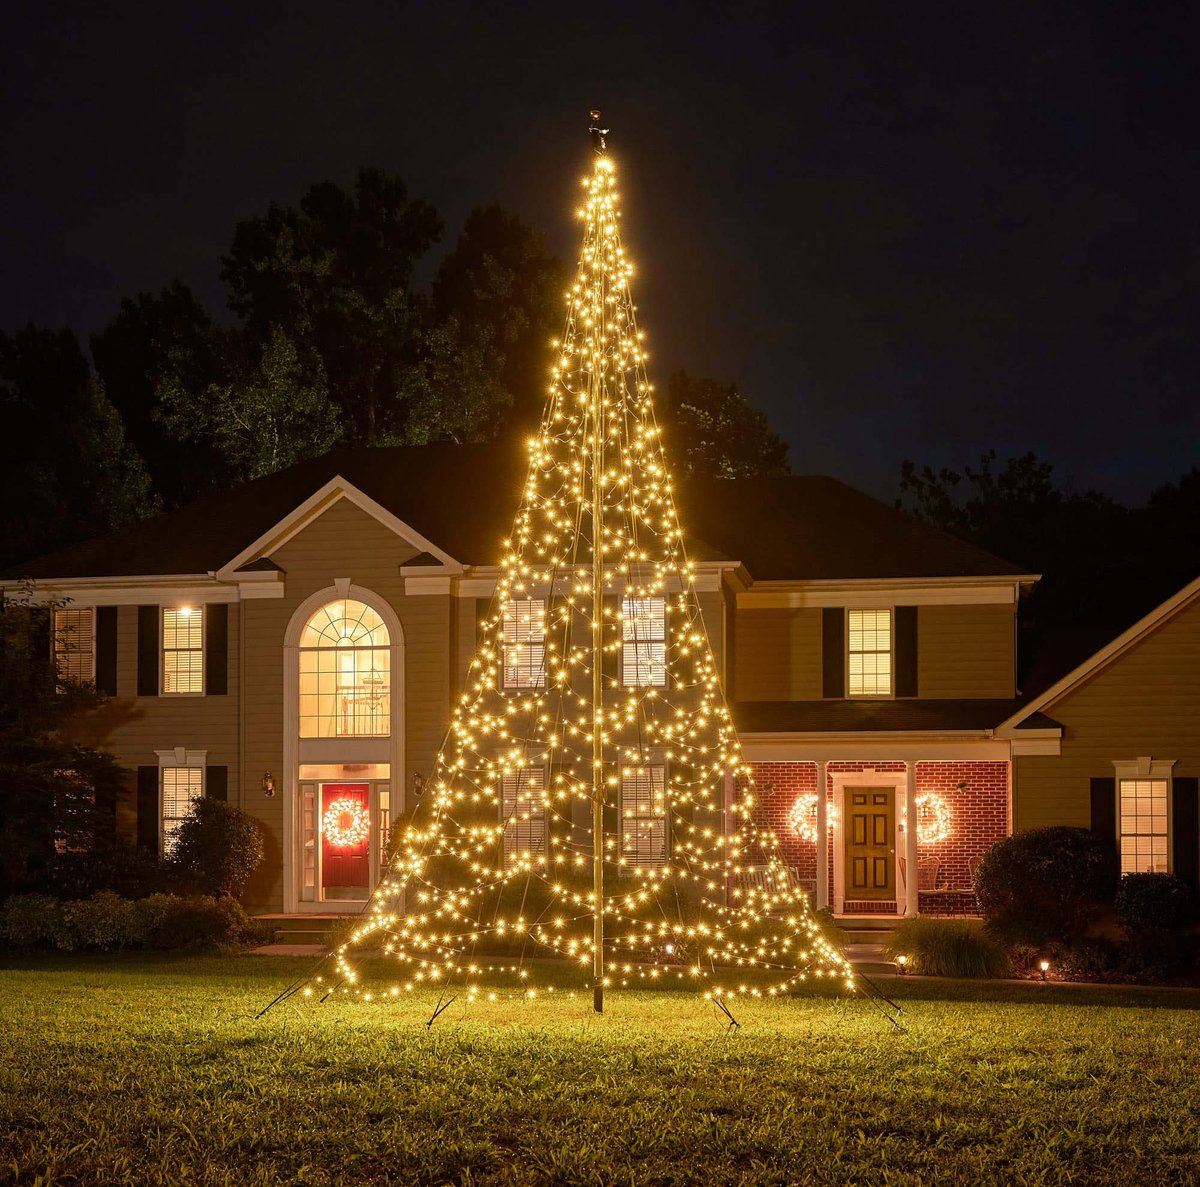 Arbre de Noël avec mât Fairybell - 600 cm - 1.200 lumières LED blanc chaud et scintillant - sans mât